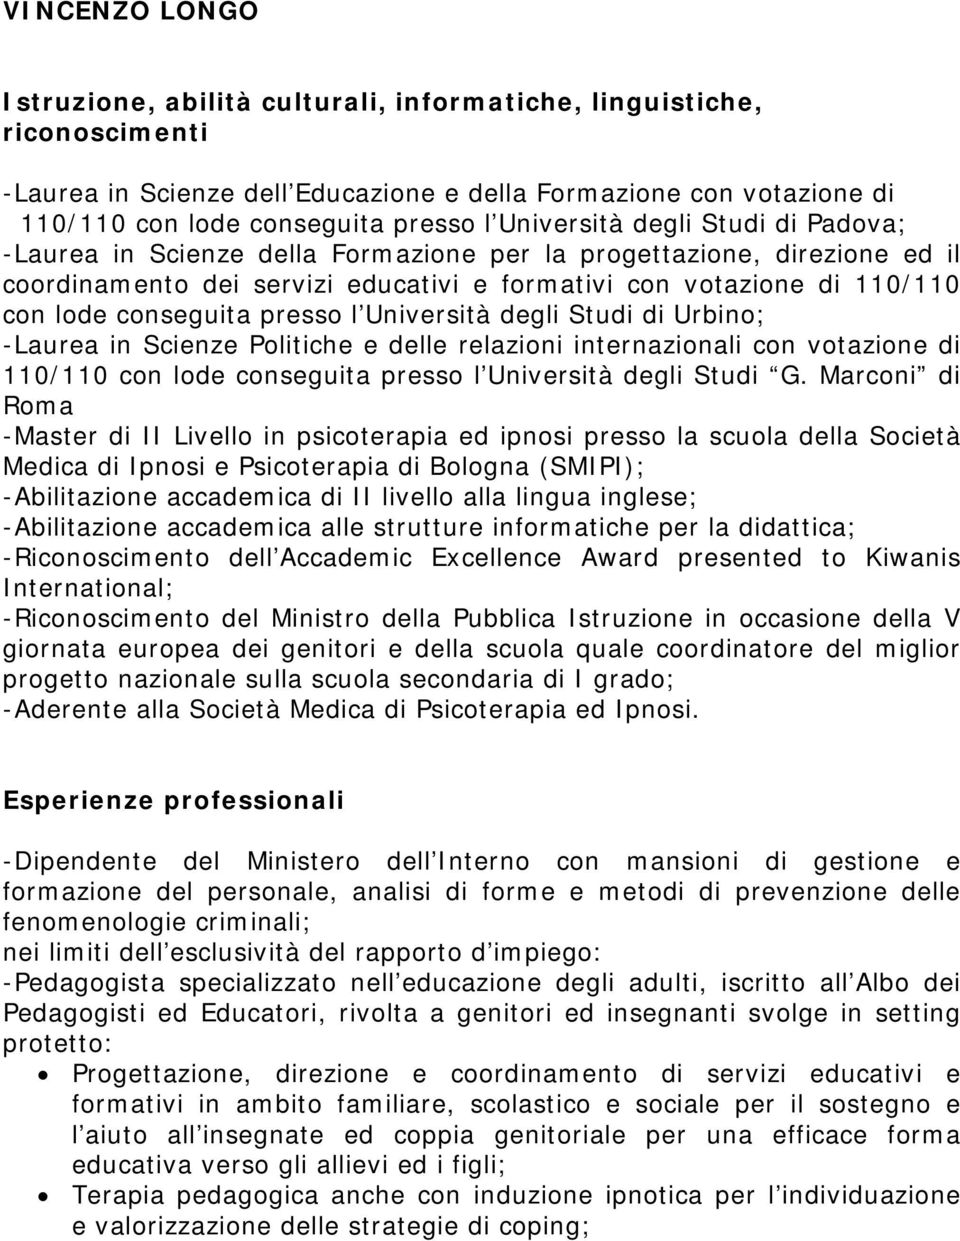 conseguita presso l Università degli Studi di Urbino; -Laurea in Scienze Politiche e delle relazioni internazionali con votazione di 110/110 con lode conseguita presso l Università degli Studi G.